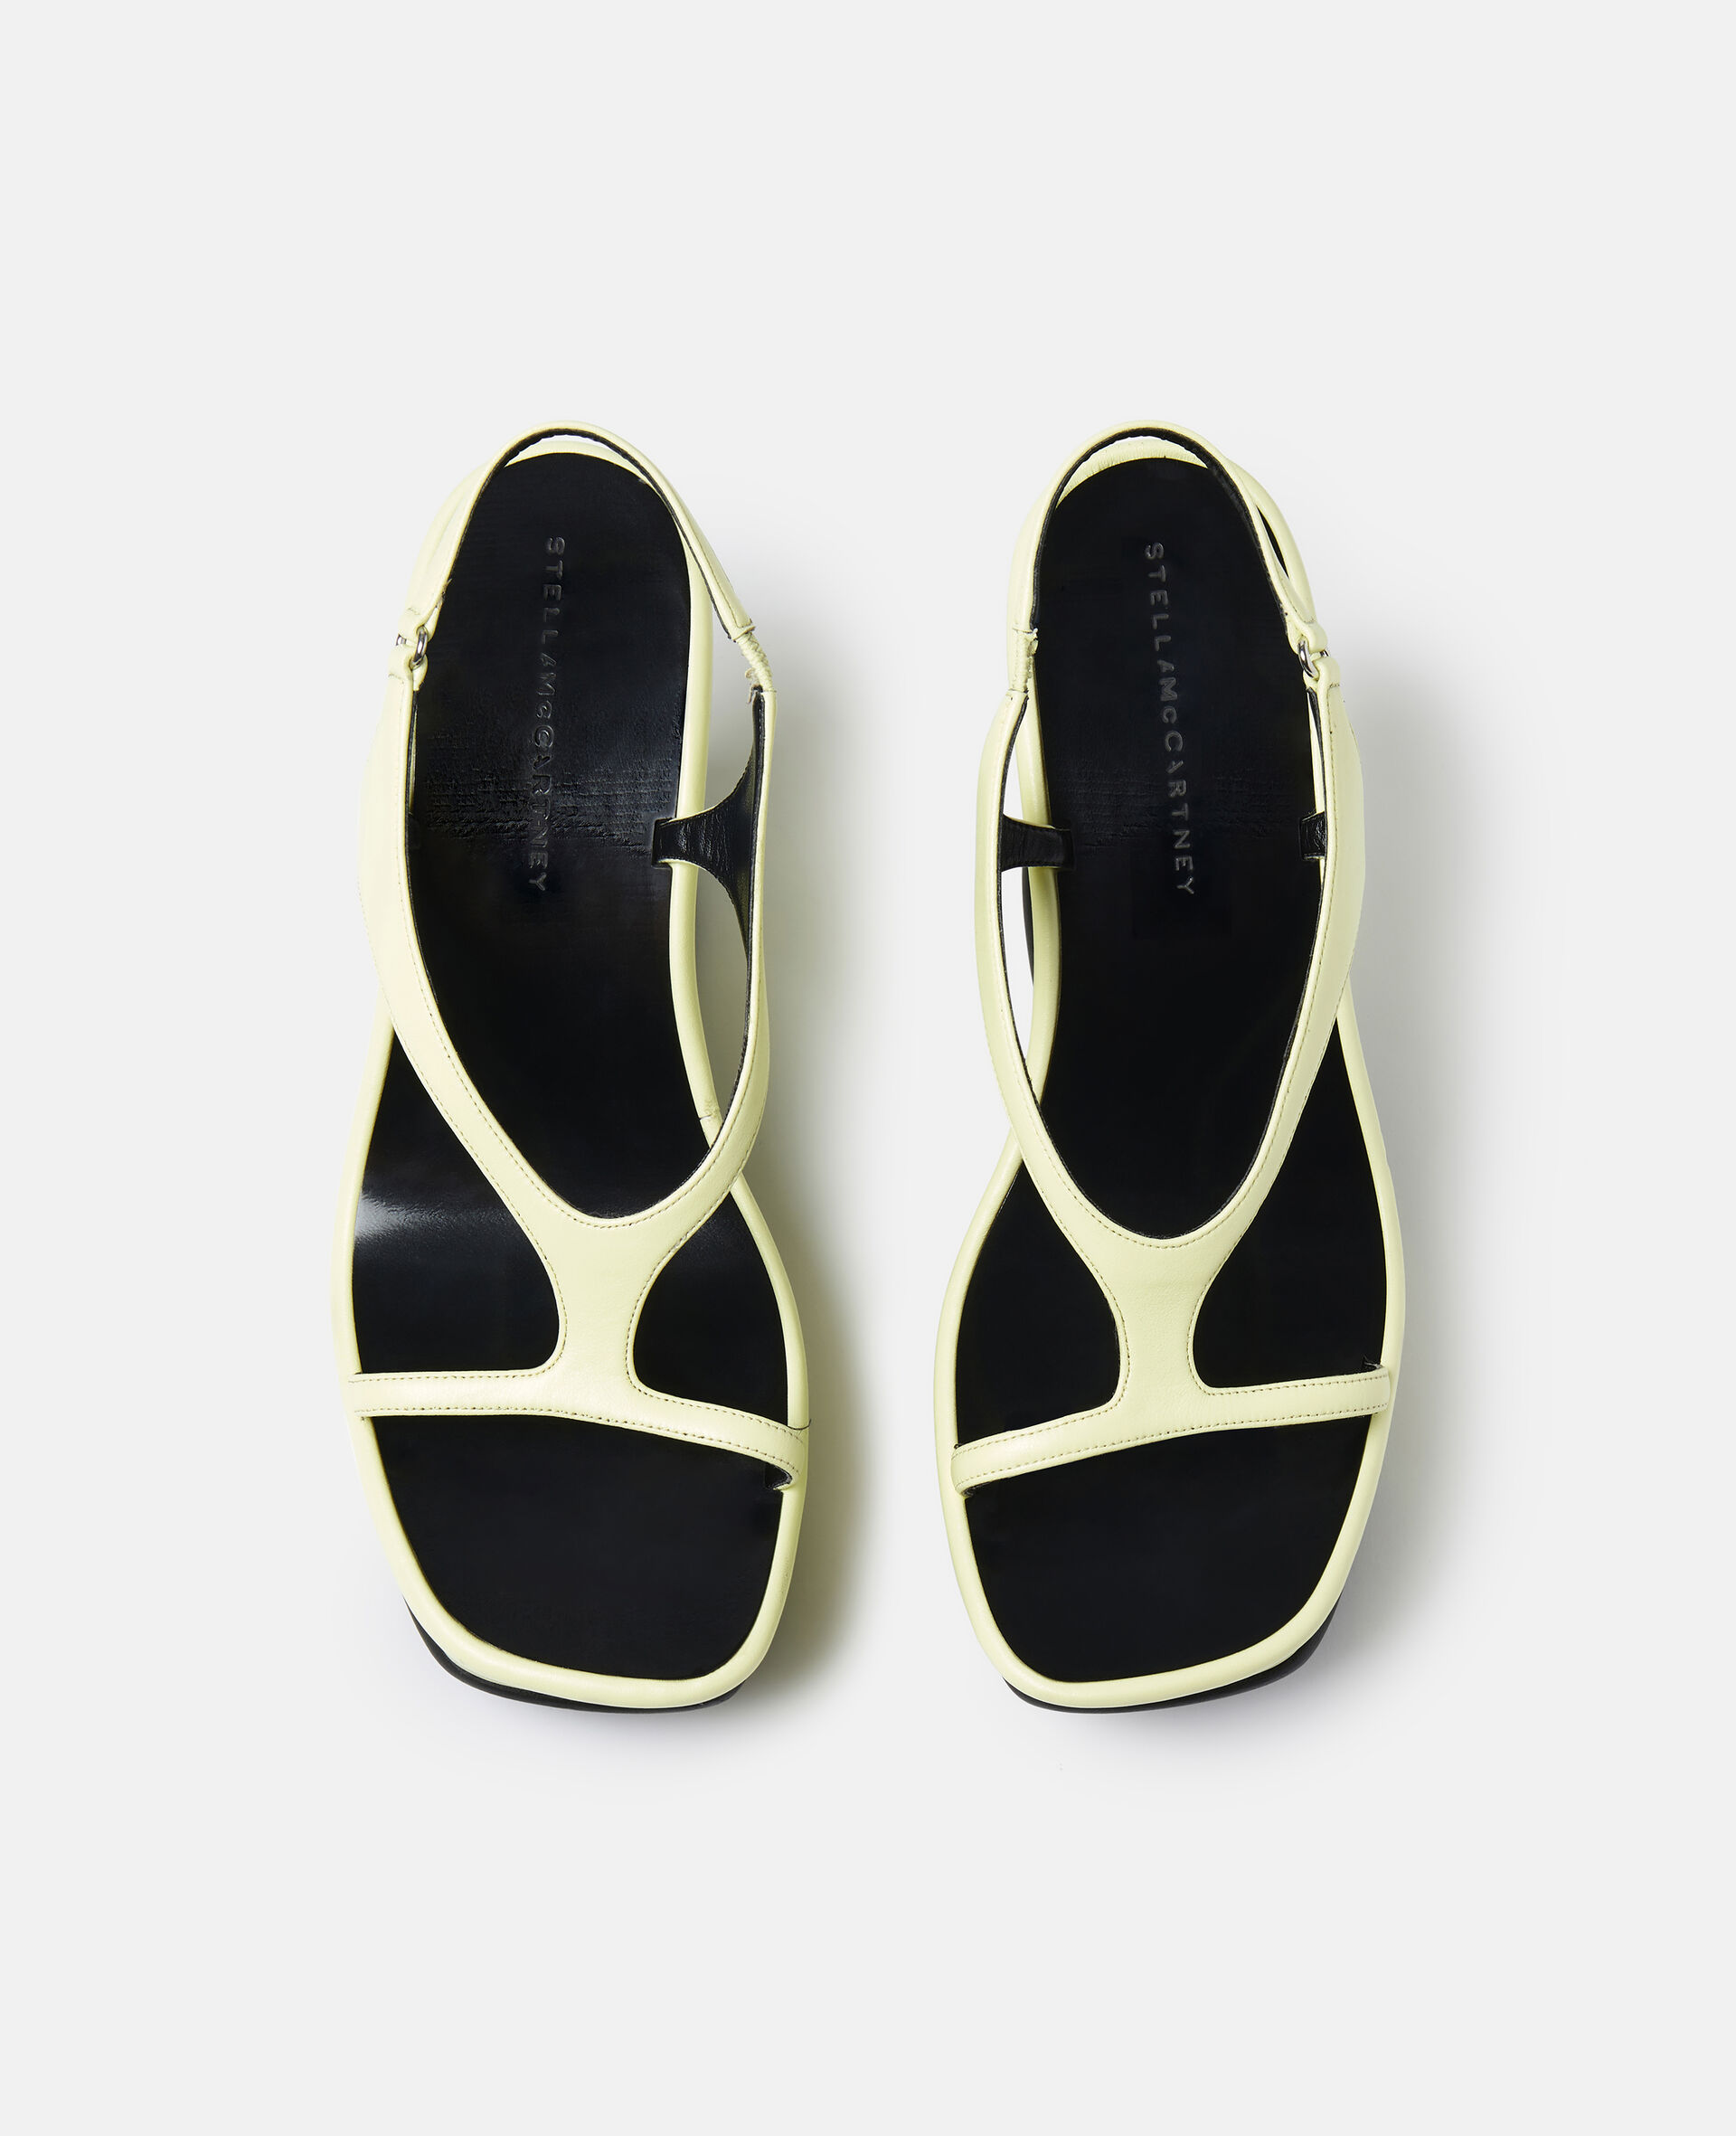 Shroom Slingback Wedge Sandals-Black-large image number 3